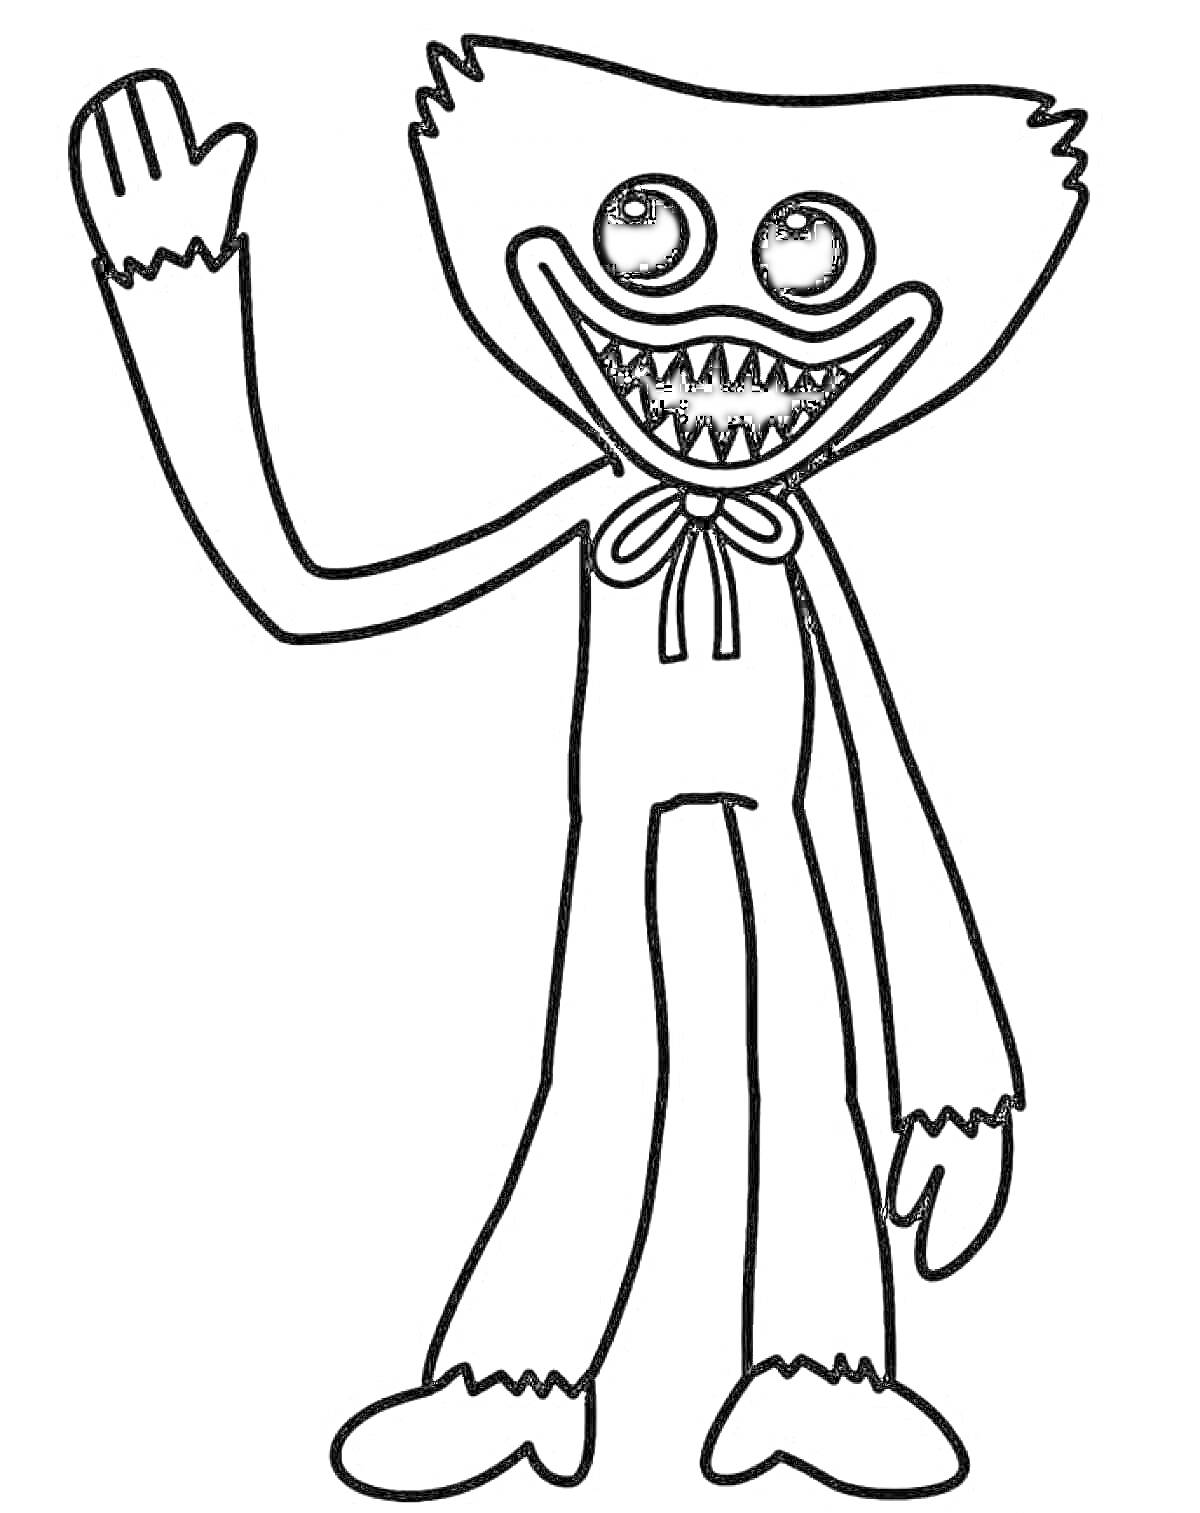 Персонаж из Poppy Playtime с кукольным телом и острыми зубами, поднимающий руку